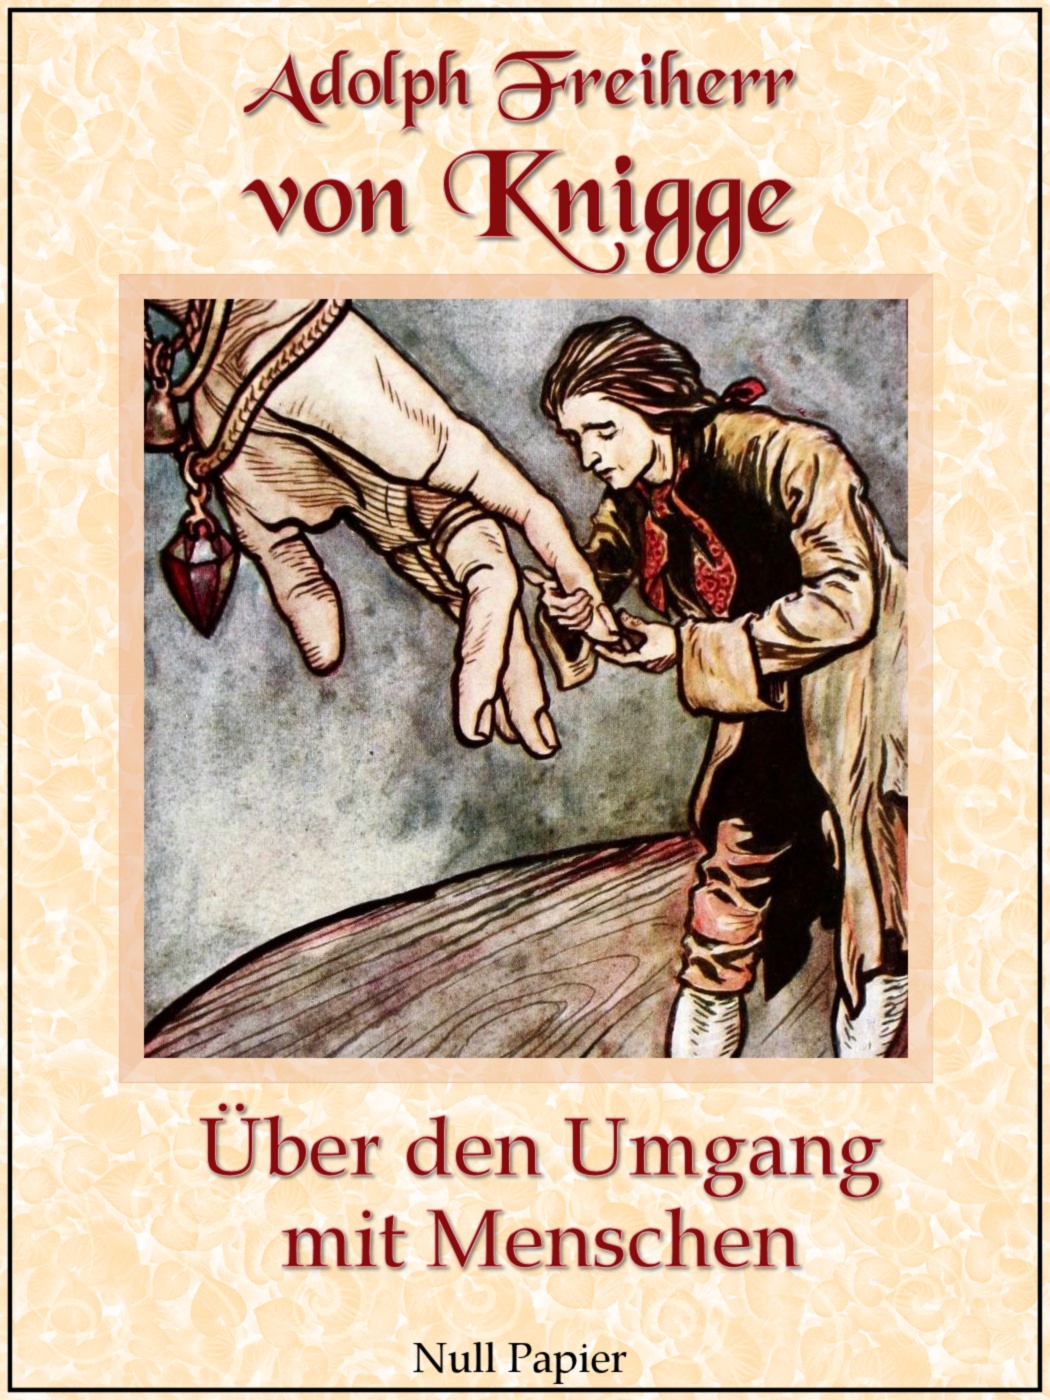 Adolph Freiherr von Knigge Über den Umgang mit Menschen